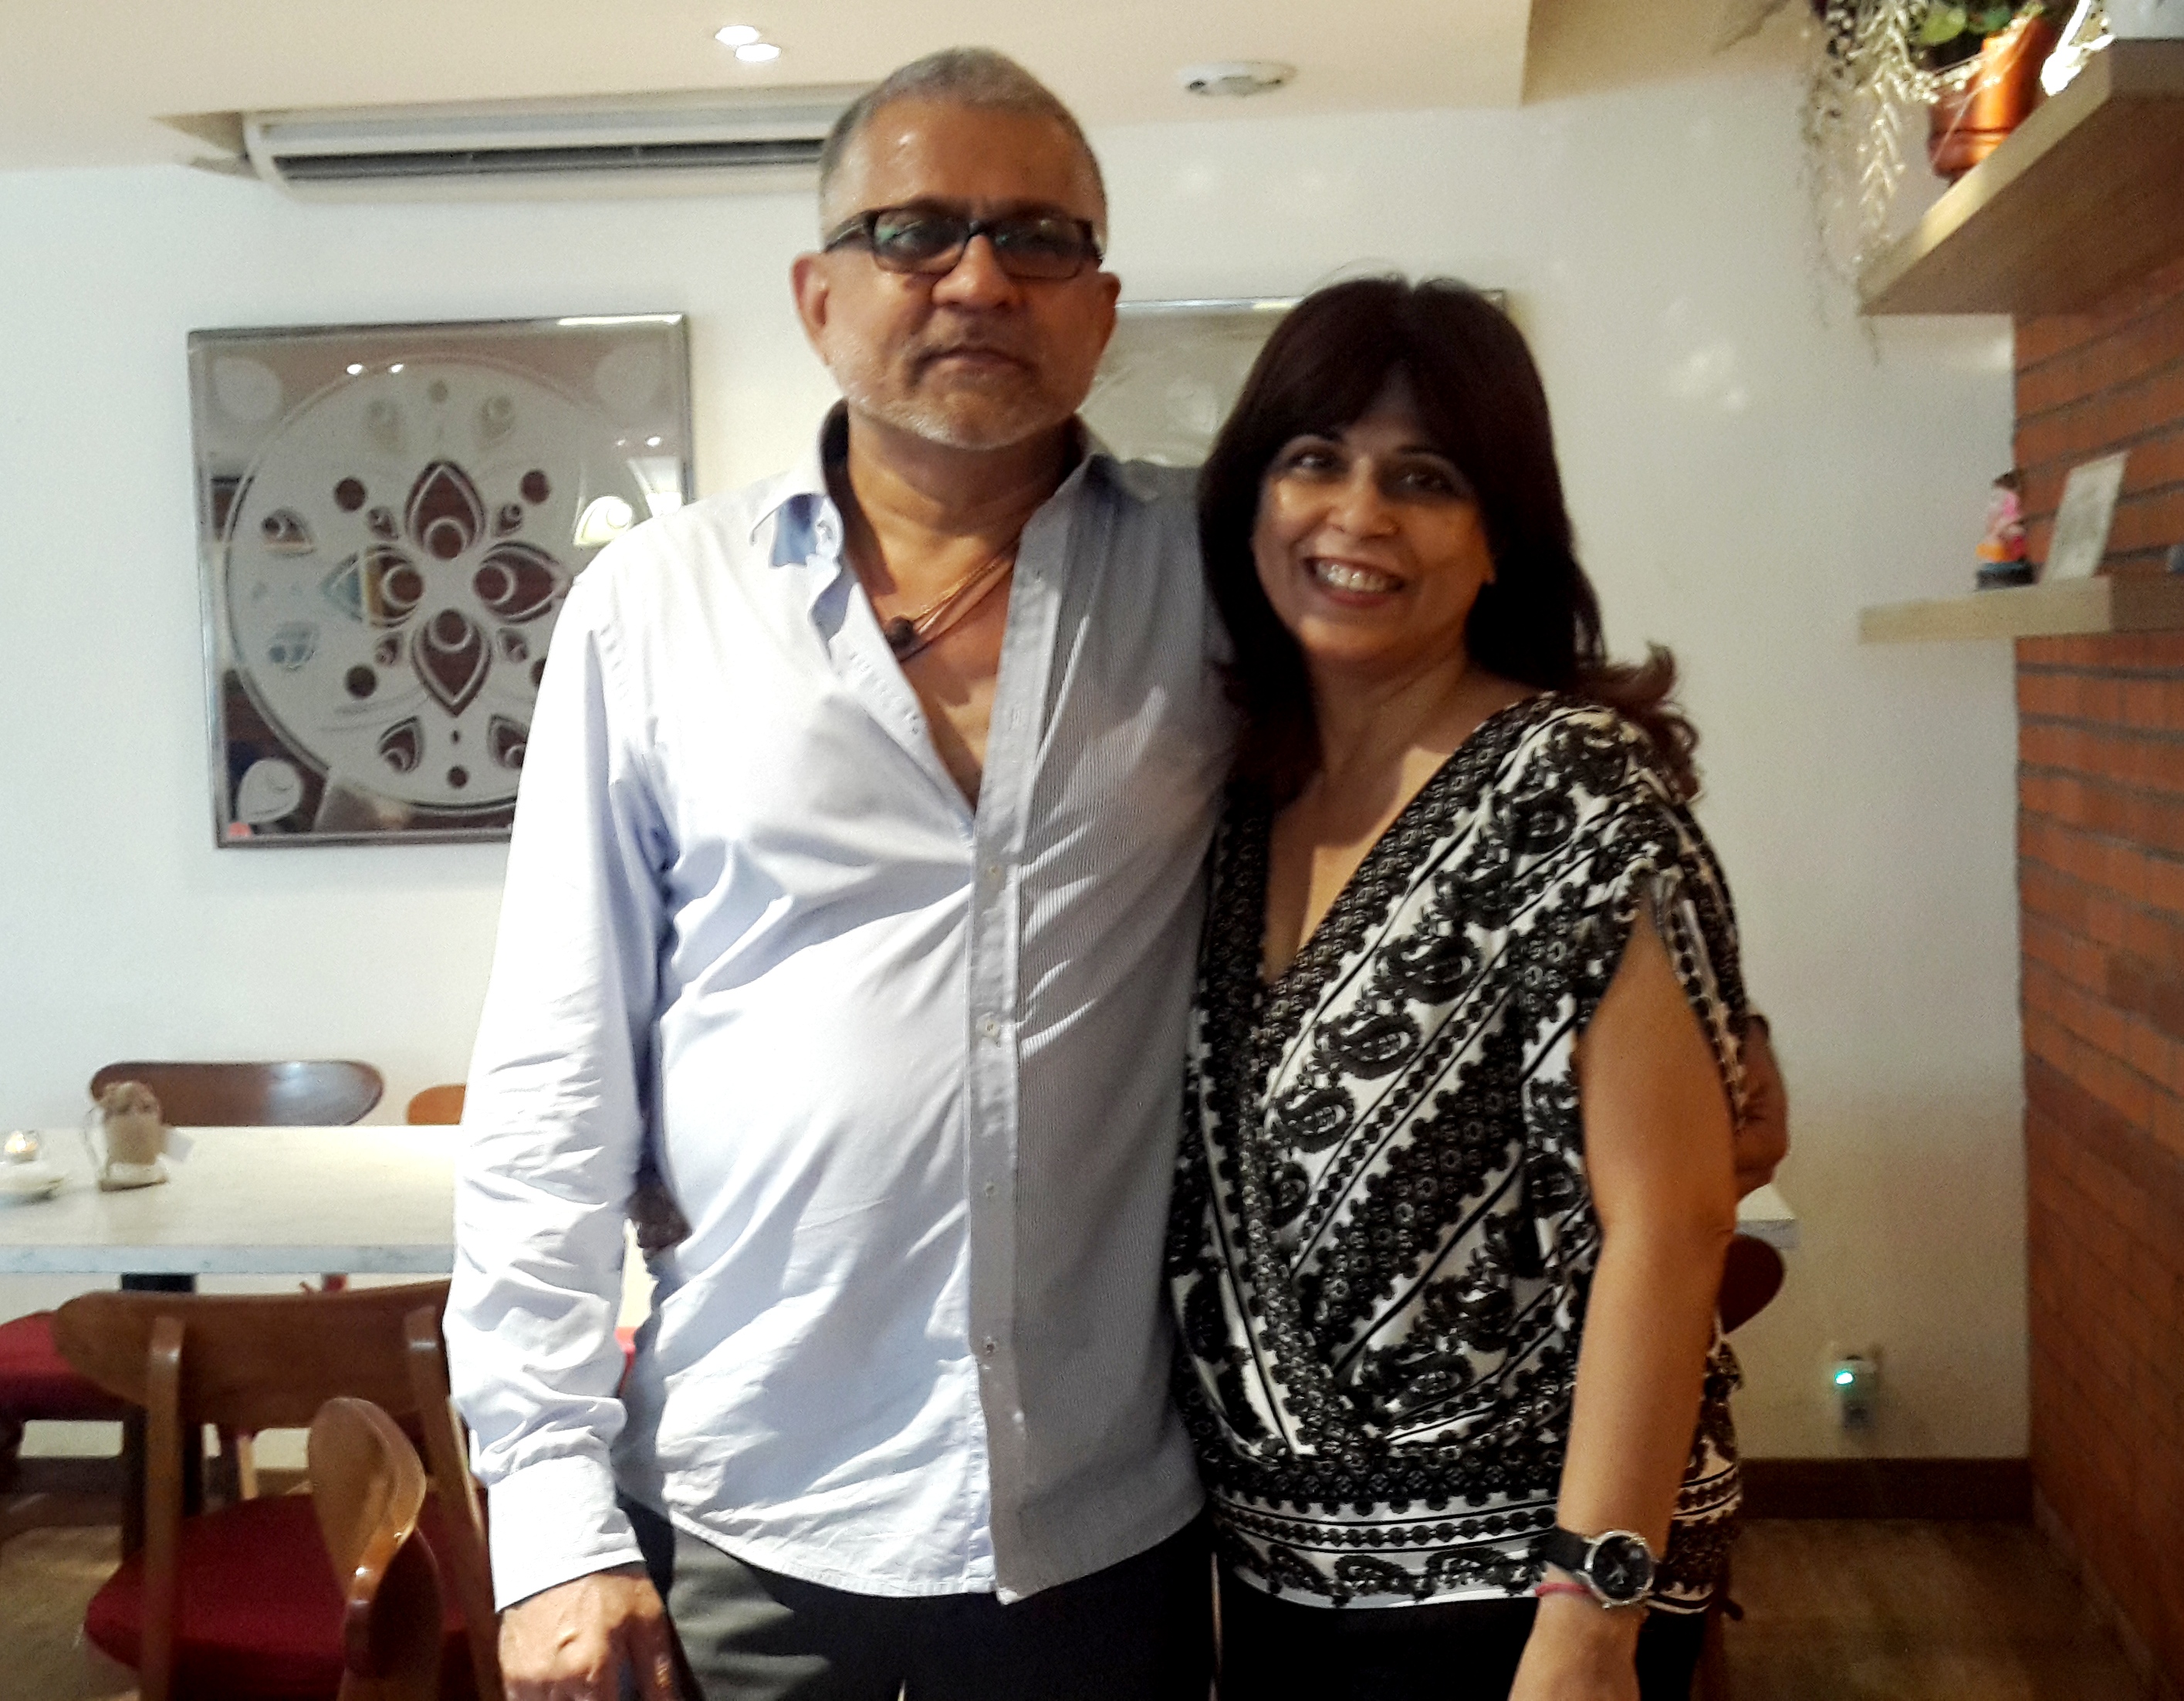 Interview with Rita Tekchand, Owner of Zanas Restaurant